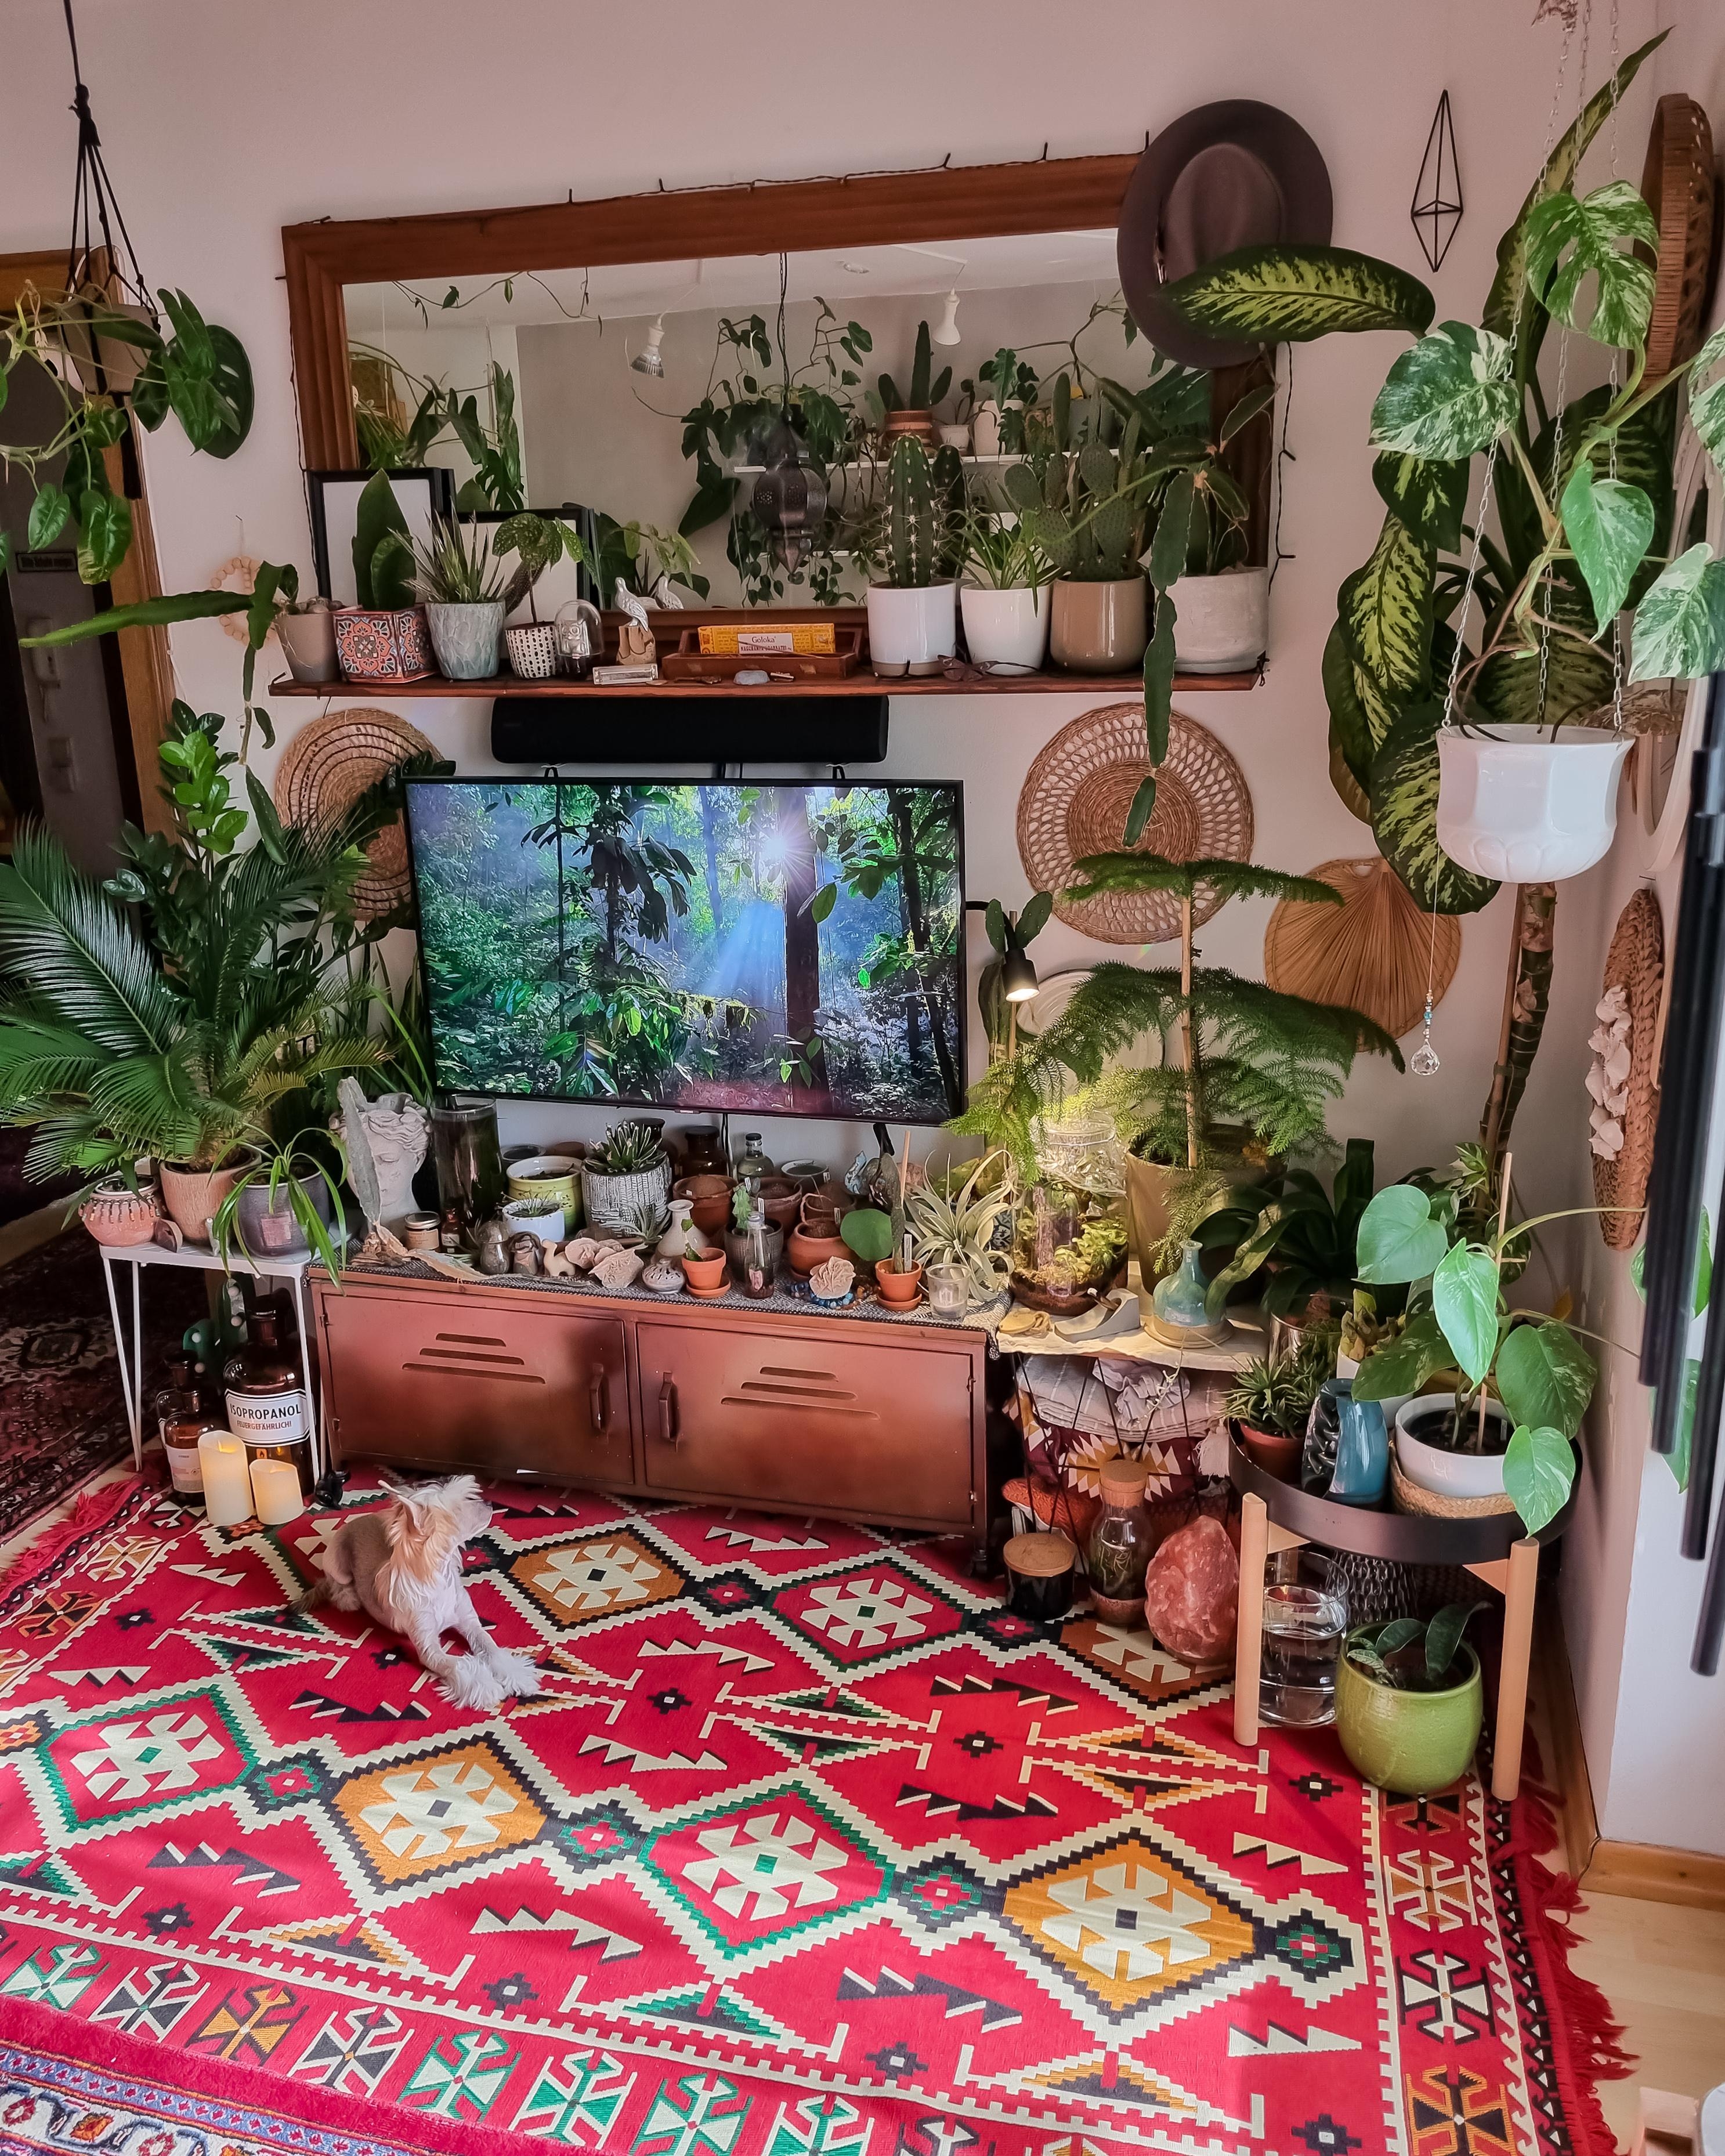 Sunday vibes ☀️🪴📺✌🏼 #Wohnzimmer #Pflanzen #Kommode #Teppich #boho #hippie #urbanjungle #Spiegel #regal #sideboard 